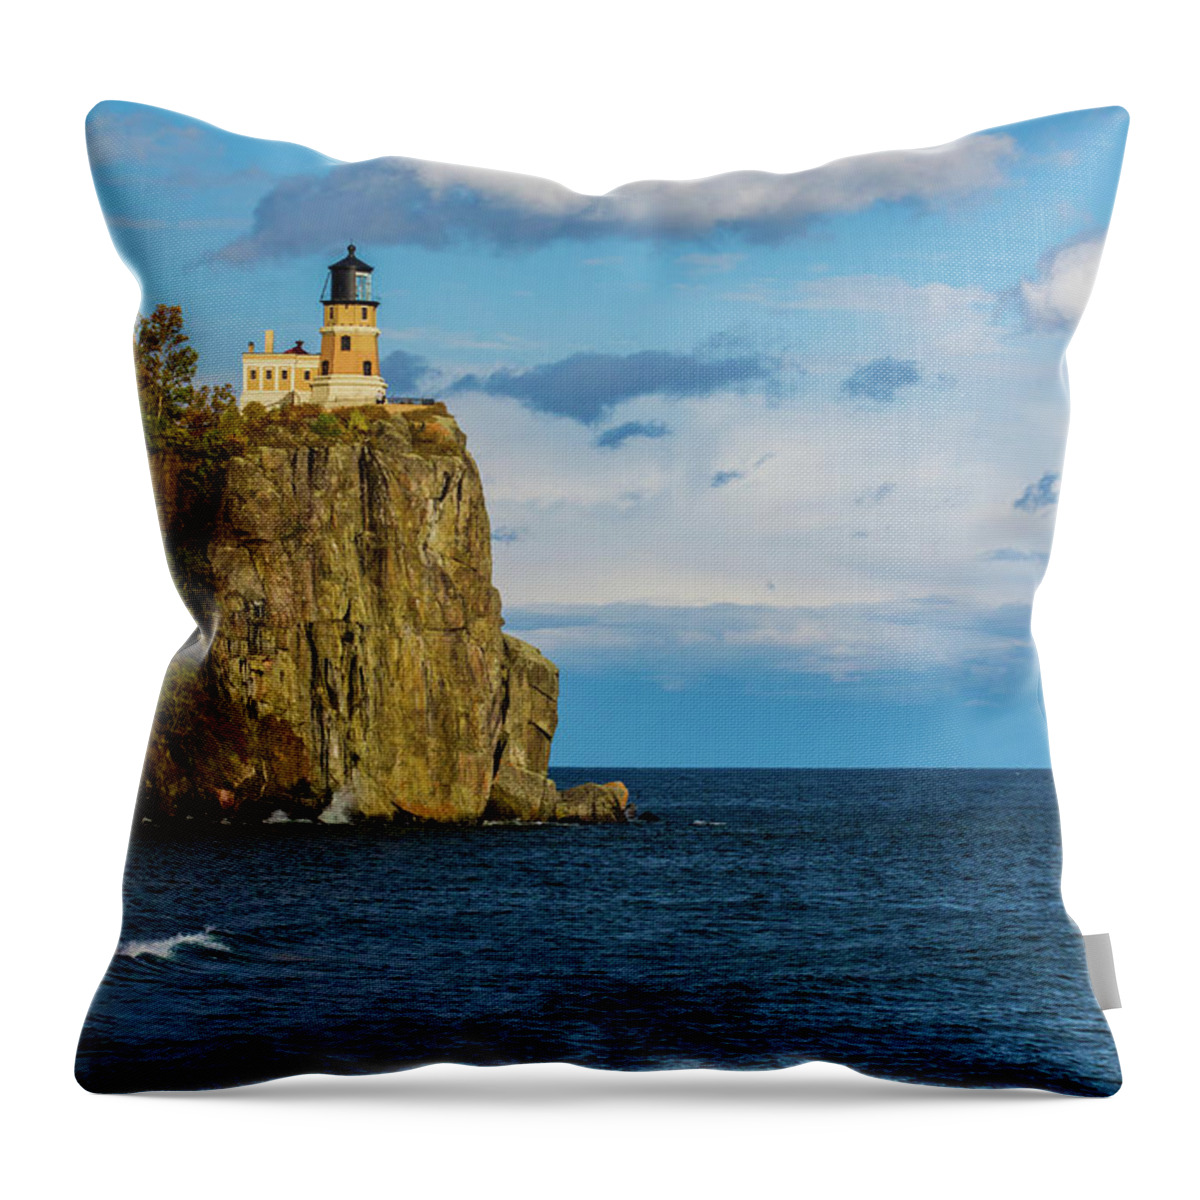 Split Rock Lighthouse Throw Pillow featuring the photograph Split Rock Lighthouse 5 by Jana Rosenkranz